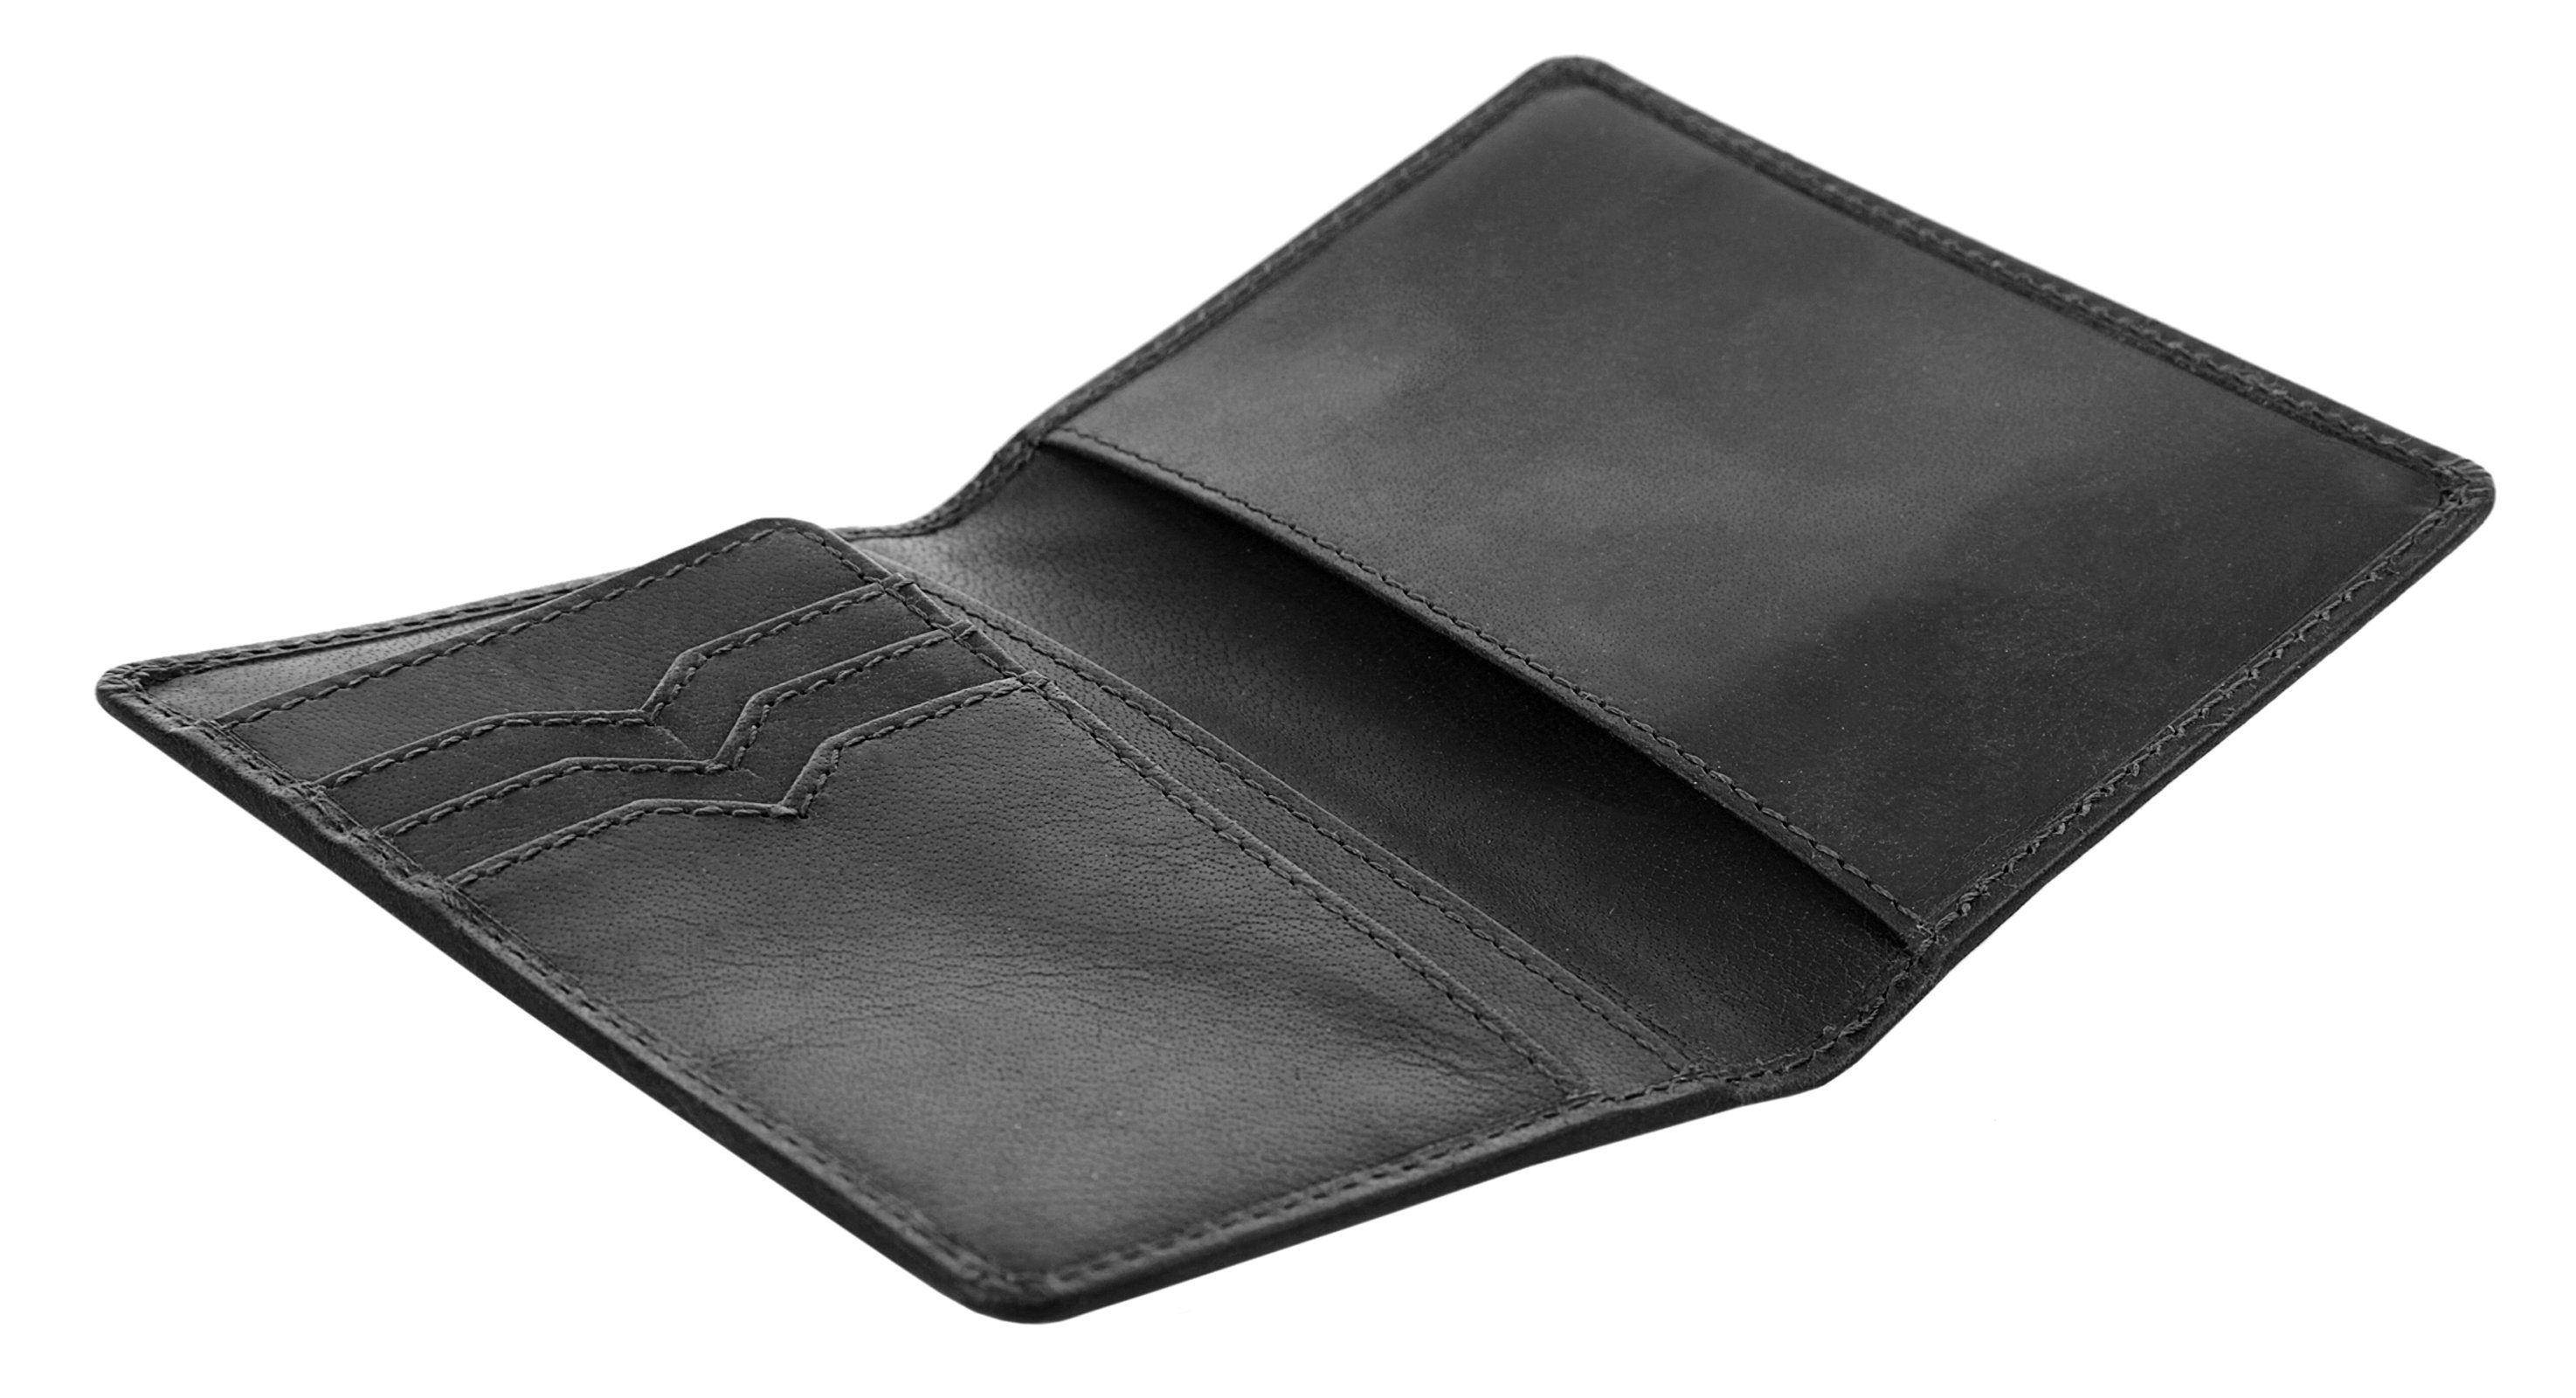 X-Zone Brieftasche, echt Leder schwarz